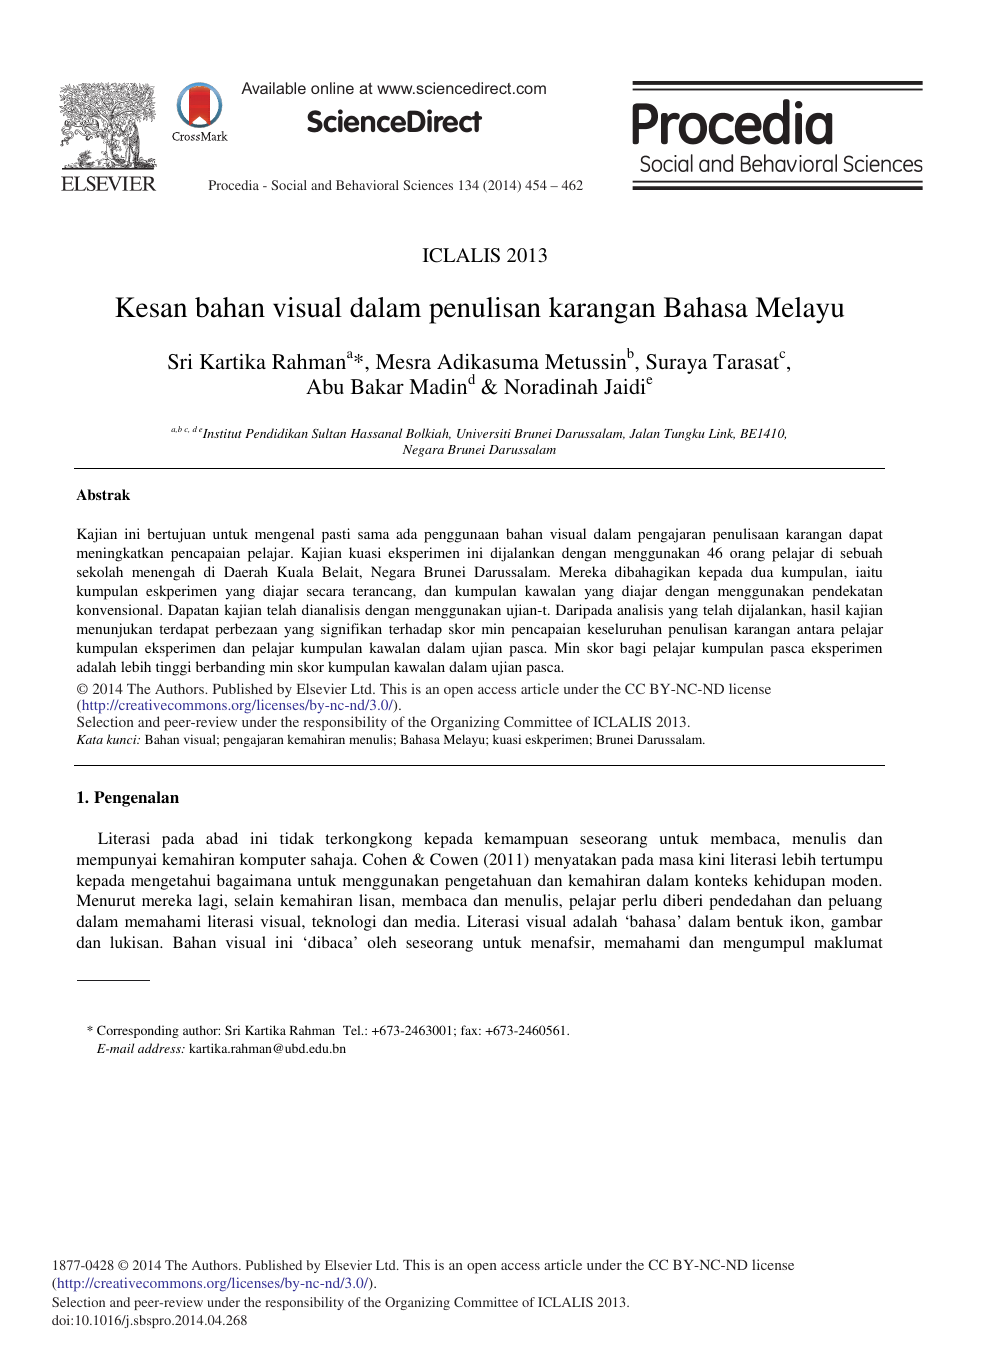 Kesan Bahan Visual Dalam Penulisan Karangan Bahasa Melayu Topic Of Research Paper In Medical Engineering Download Scholarly Article Pdf And Read For Free On Cyberleninka Open Science Hub